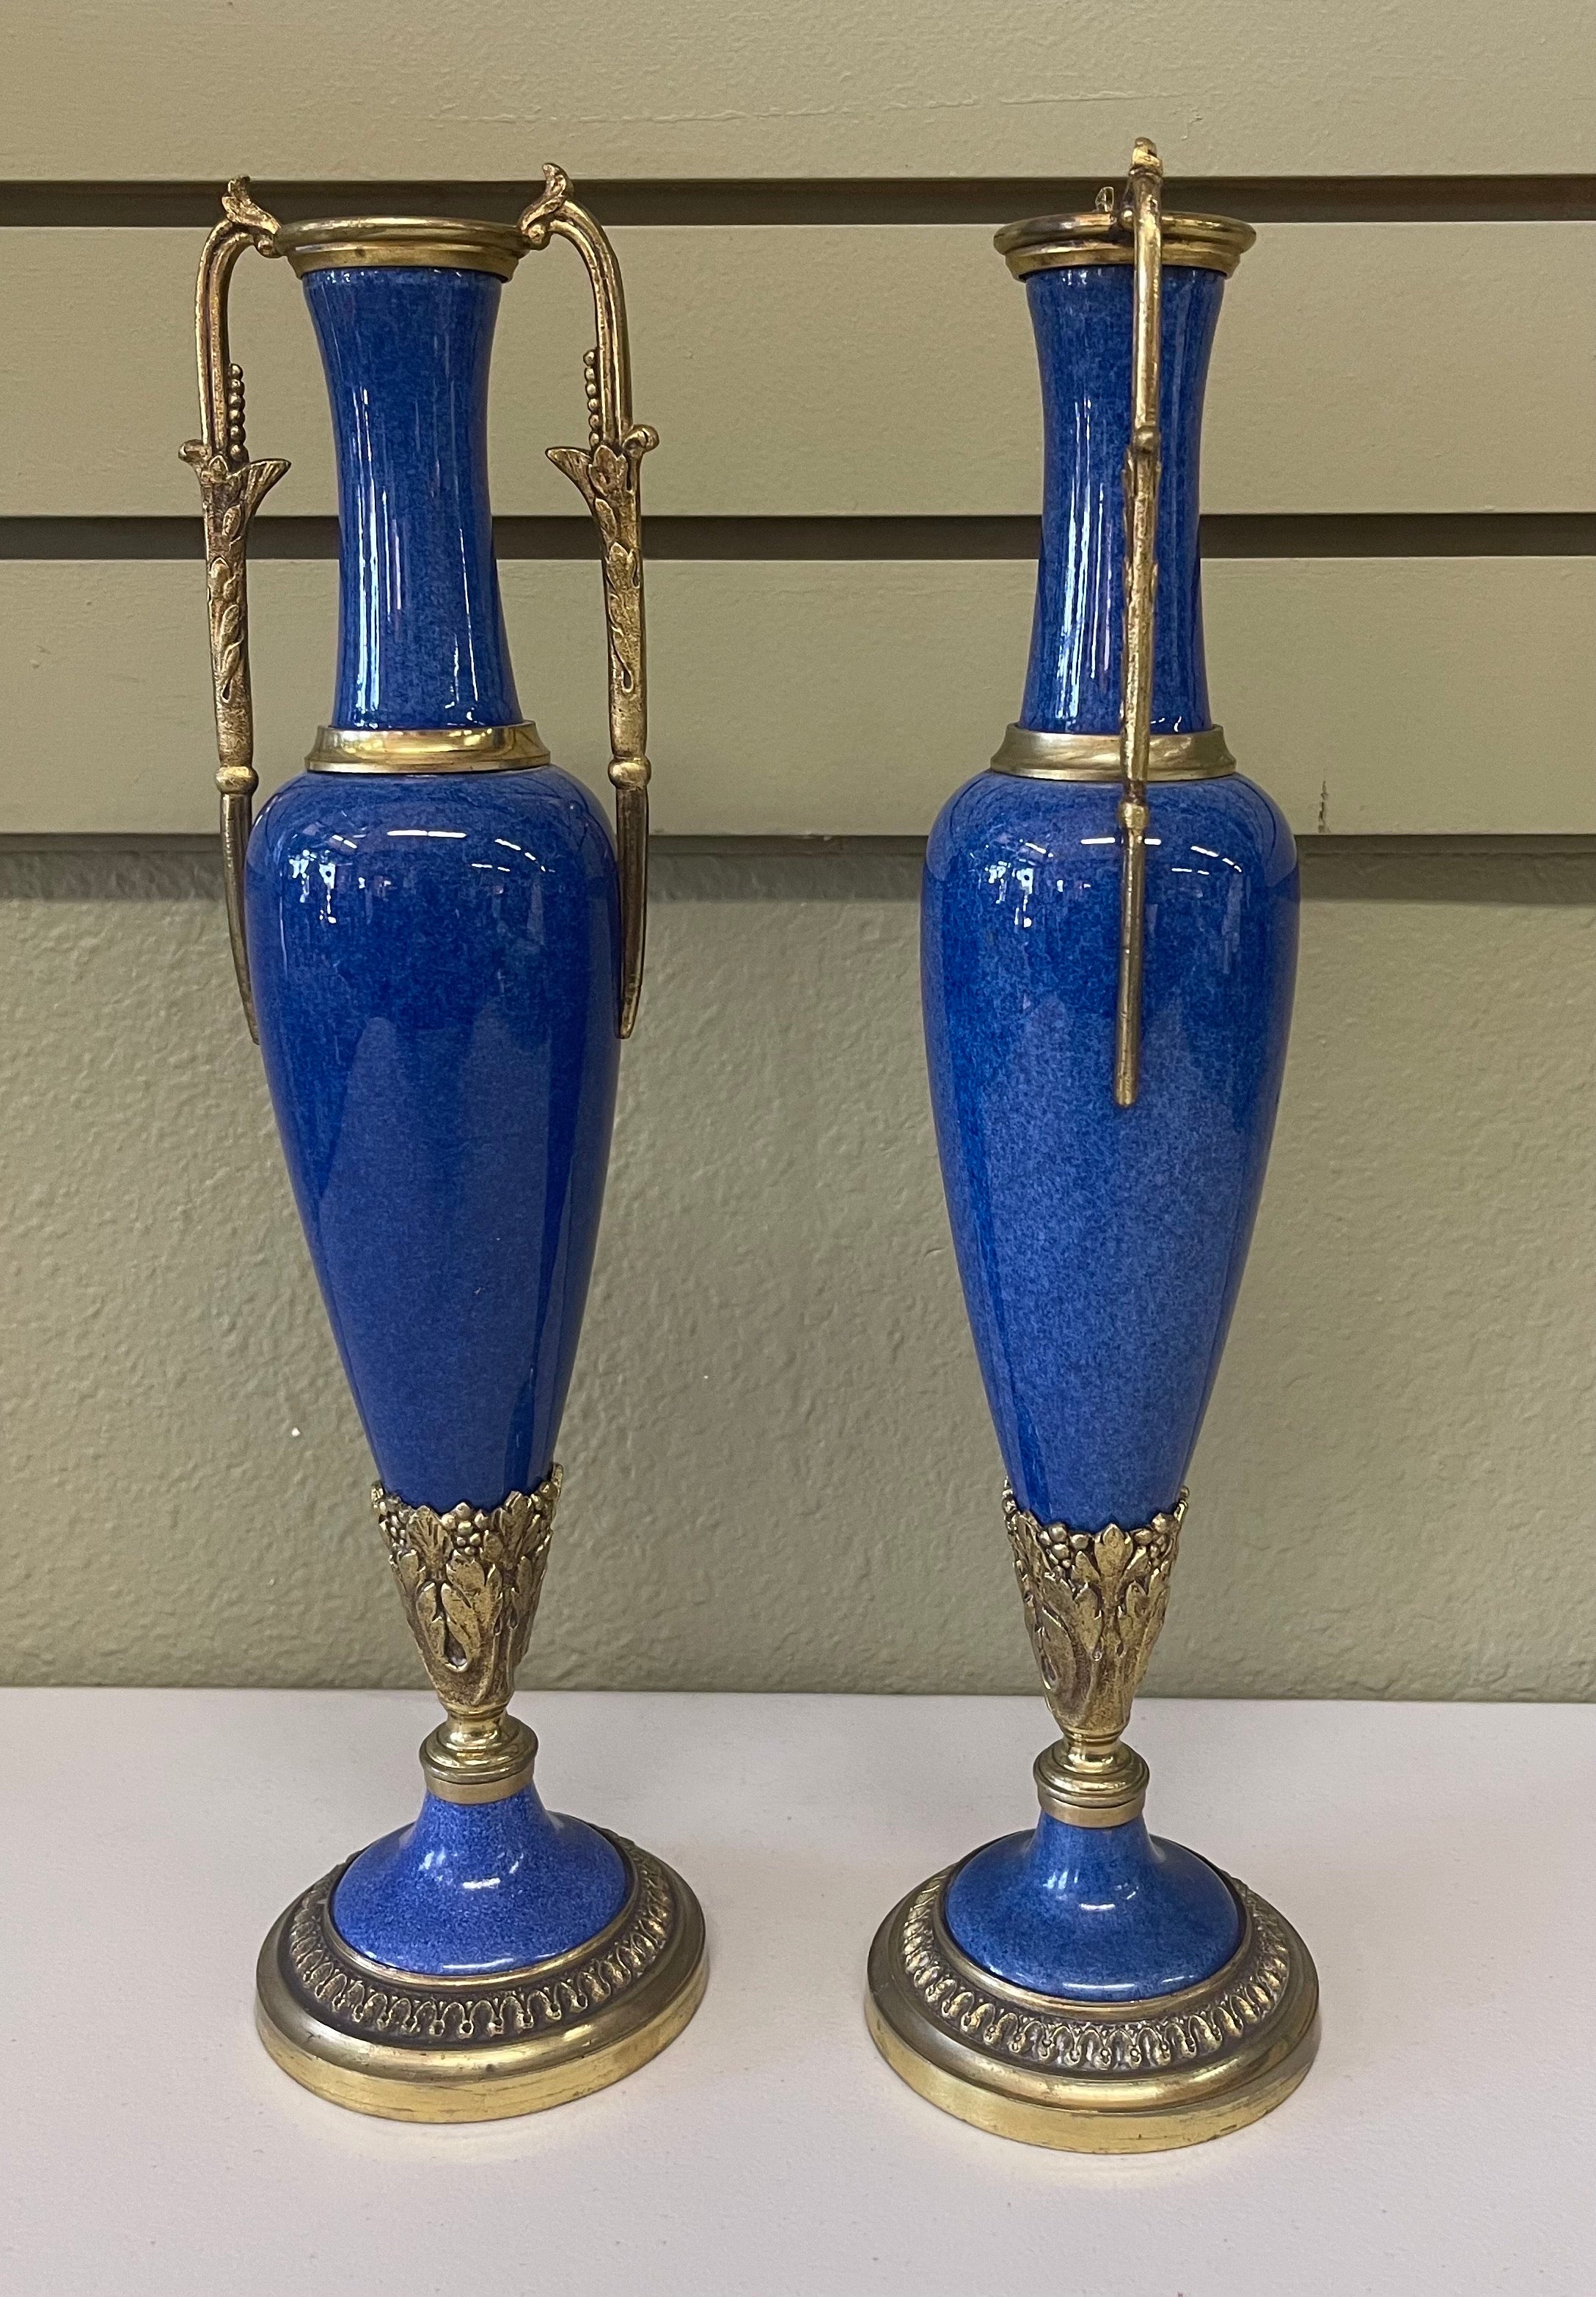 Exquisites Paar lapisblauer Porzellan- und Messinggarnituren von Sevres aus Frankreich, um das späte 18. Jahrhundert. Das Set ist in sehr gutem antiken Zustand ohne Absplitterungen oder Risse. Wunderschönes Paar! #2209.